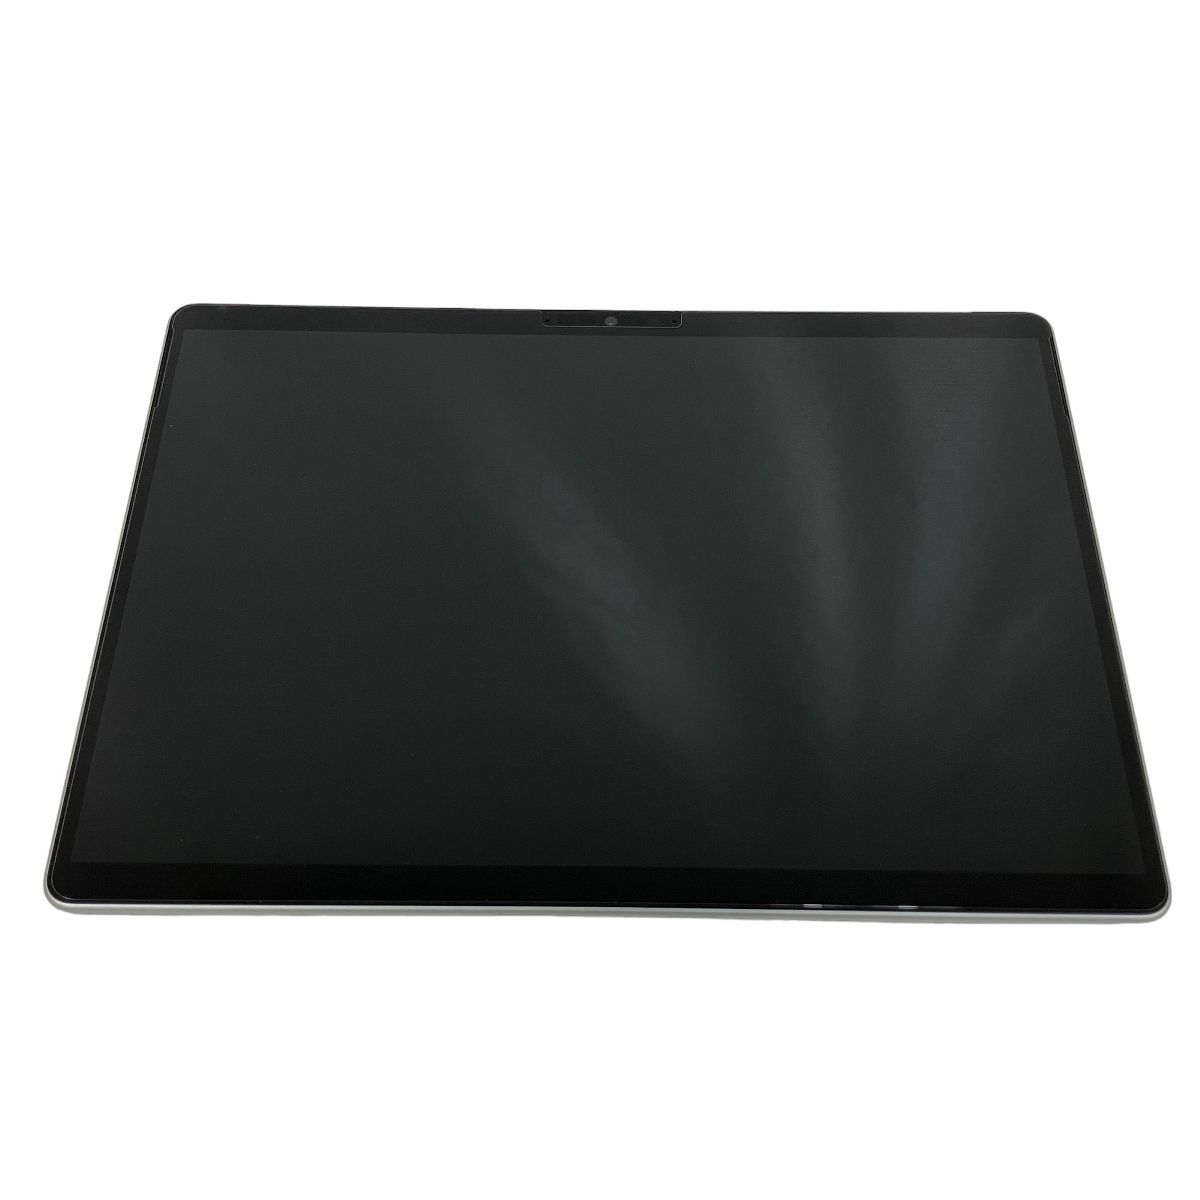 動作保証】Microsoft Surface Pro 8 8PN-00010 13インチ タブレットPC i5-1135G7 8GB SSD 128GB  中古 美品 M8954163 - メルカリ